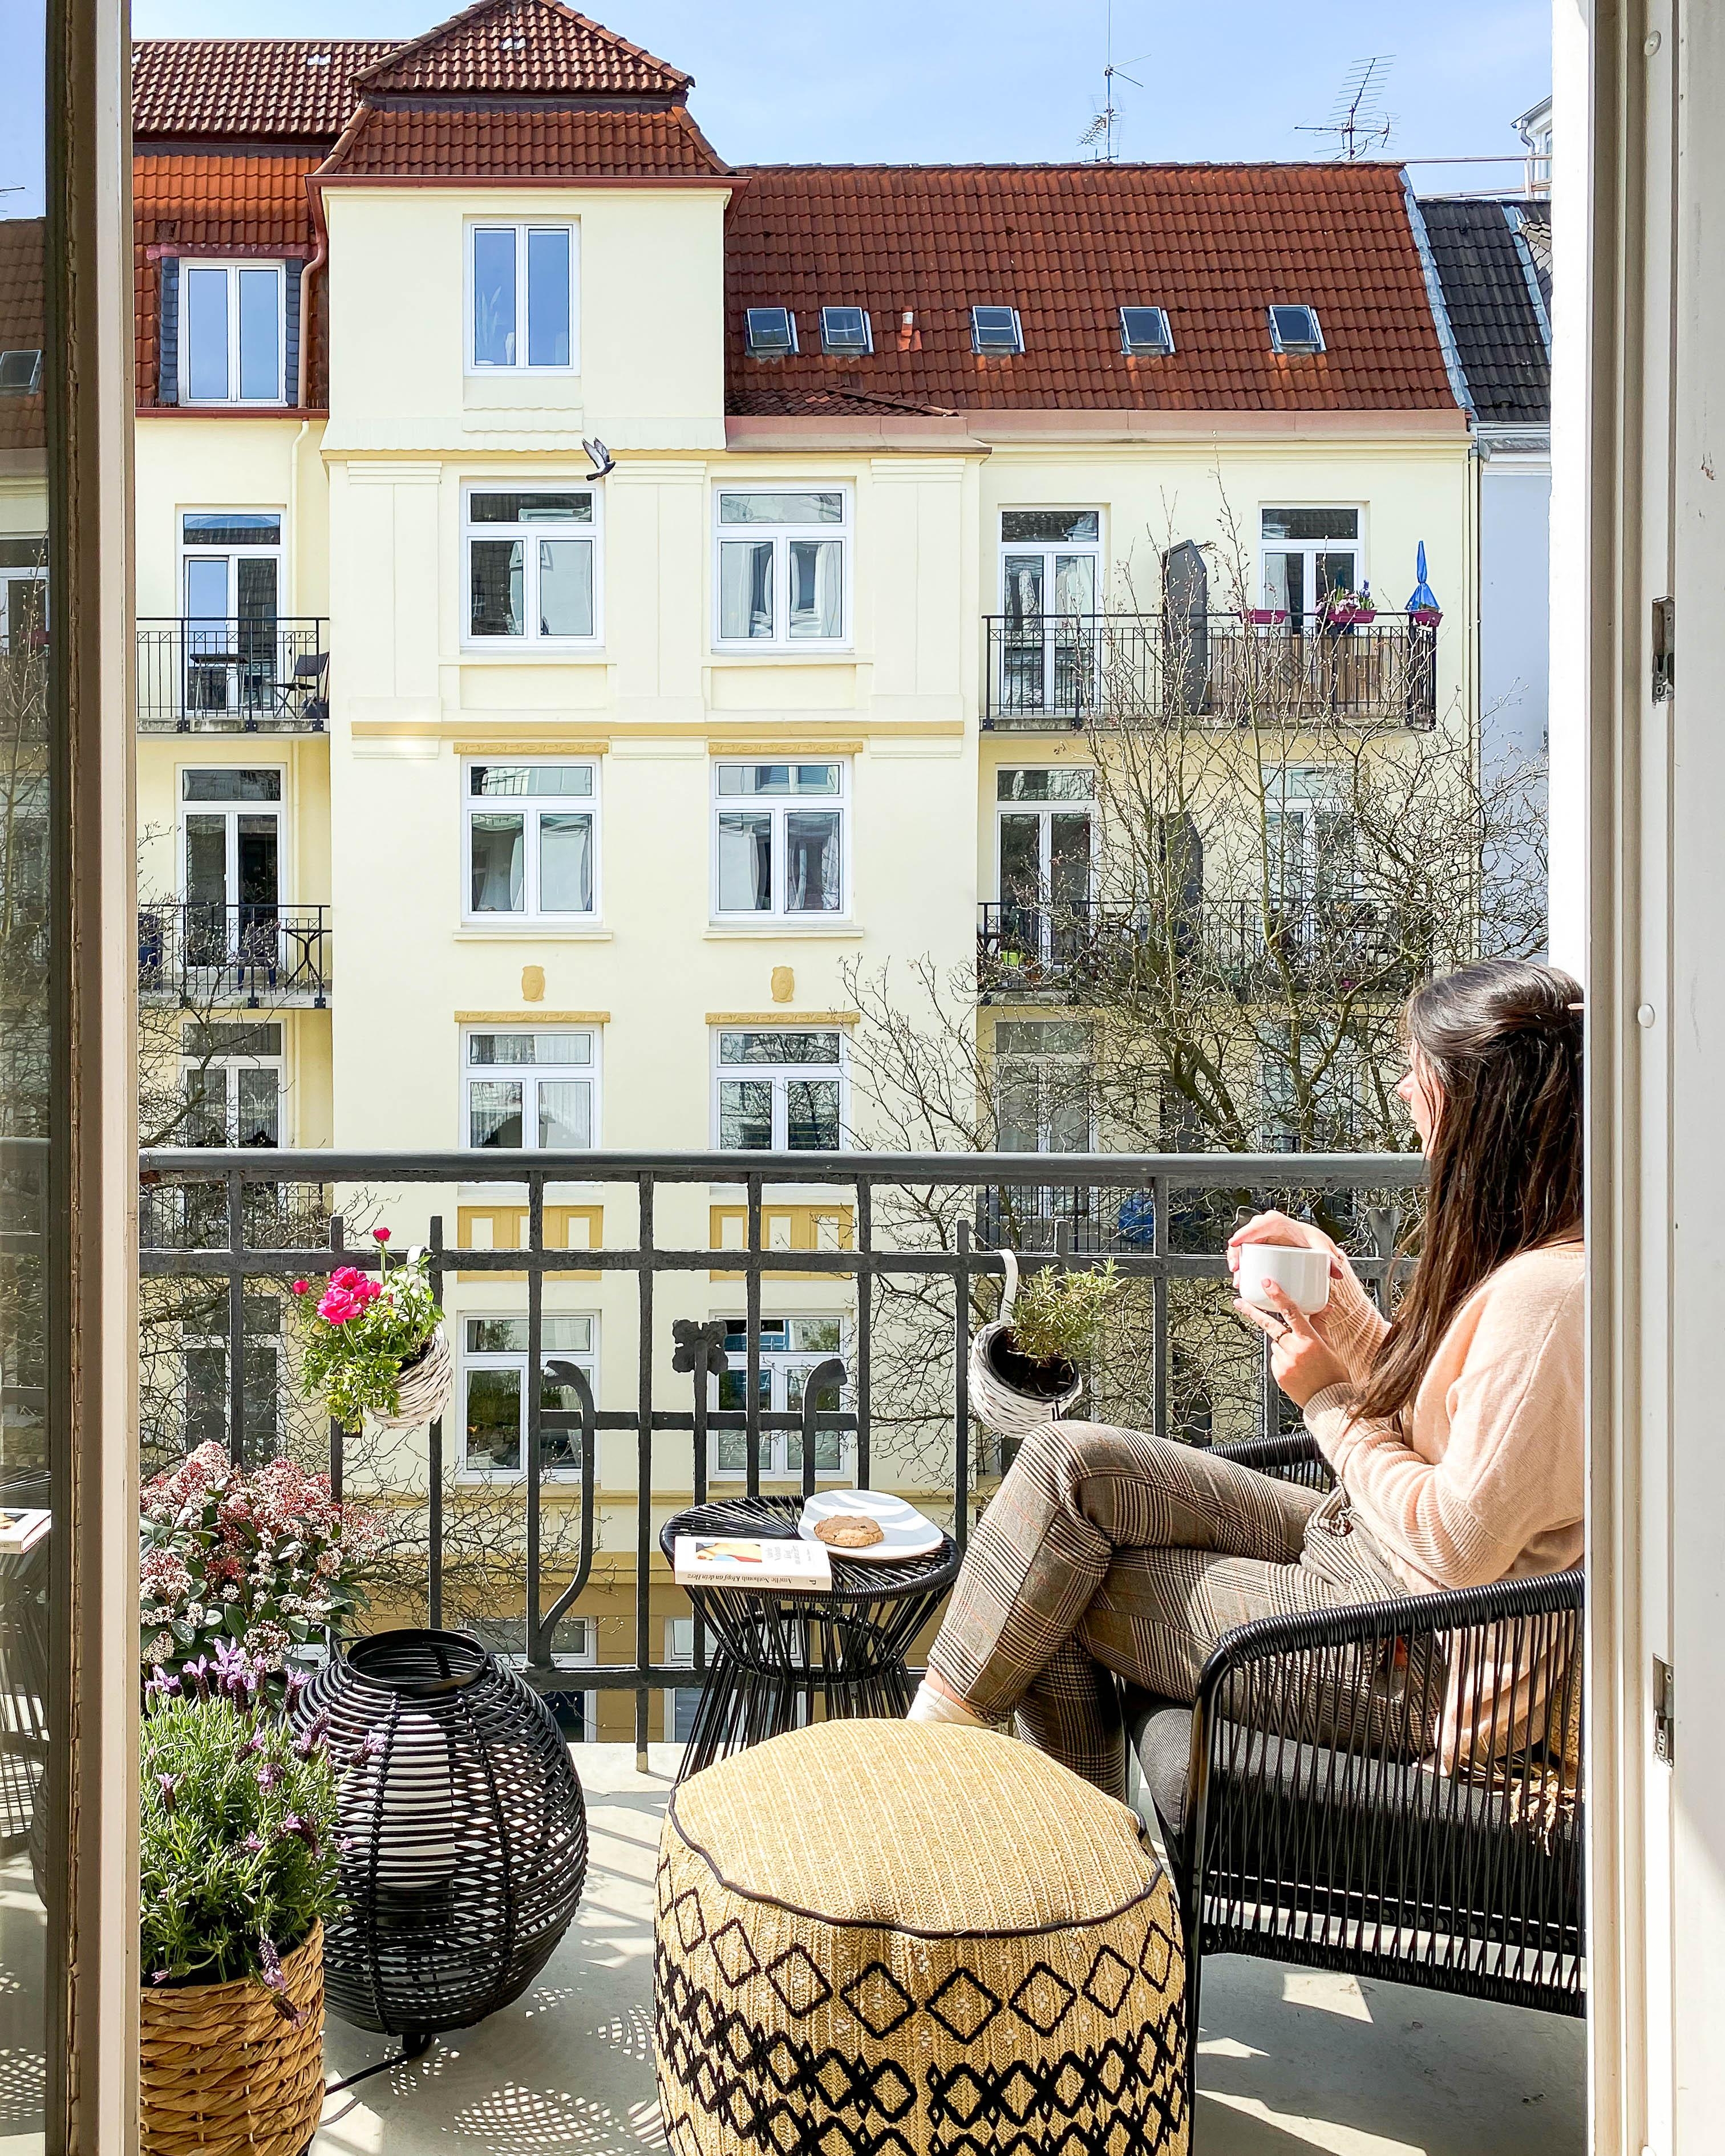 Wer genießt zurzeit auch das schöne Wetter bevorzugt auf dem #Balkon oder im #Garten? 